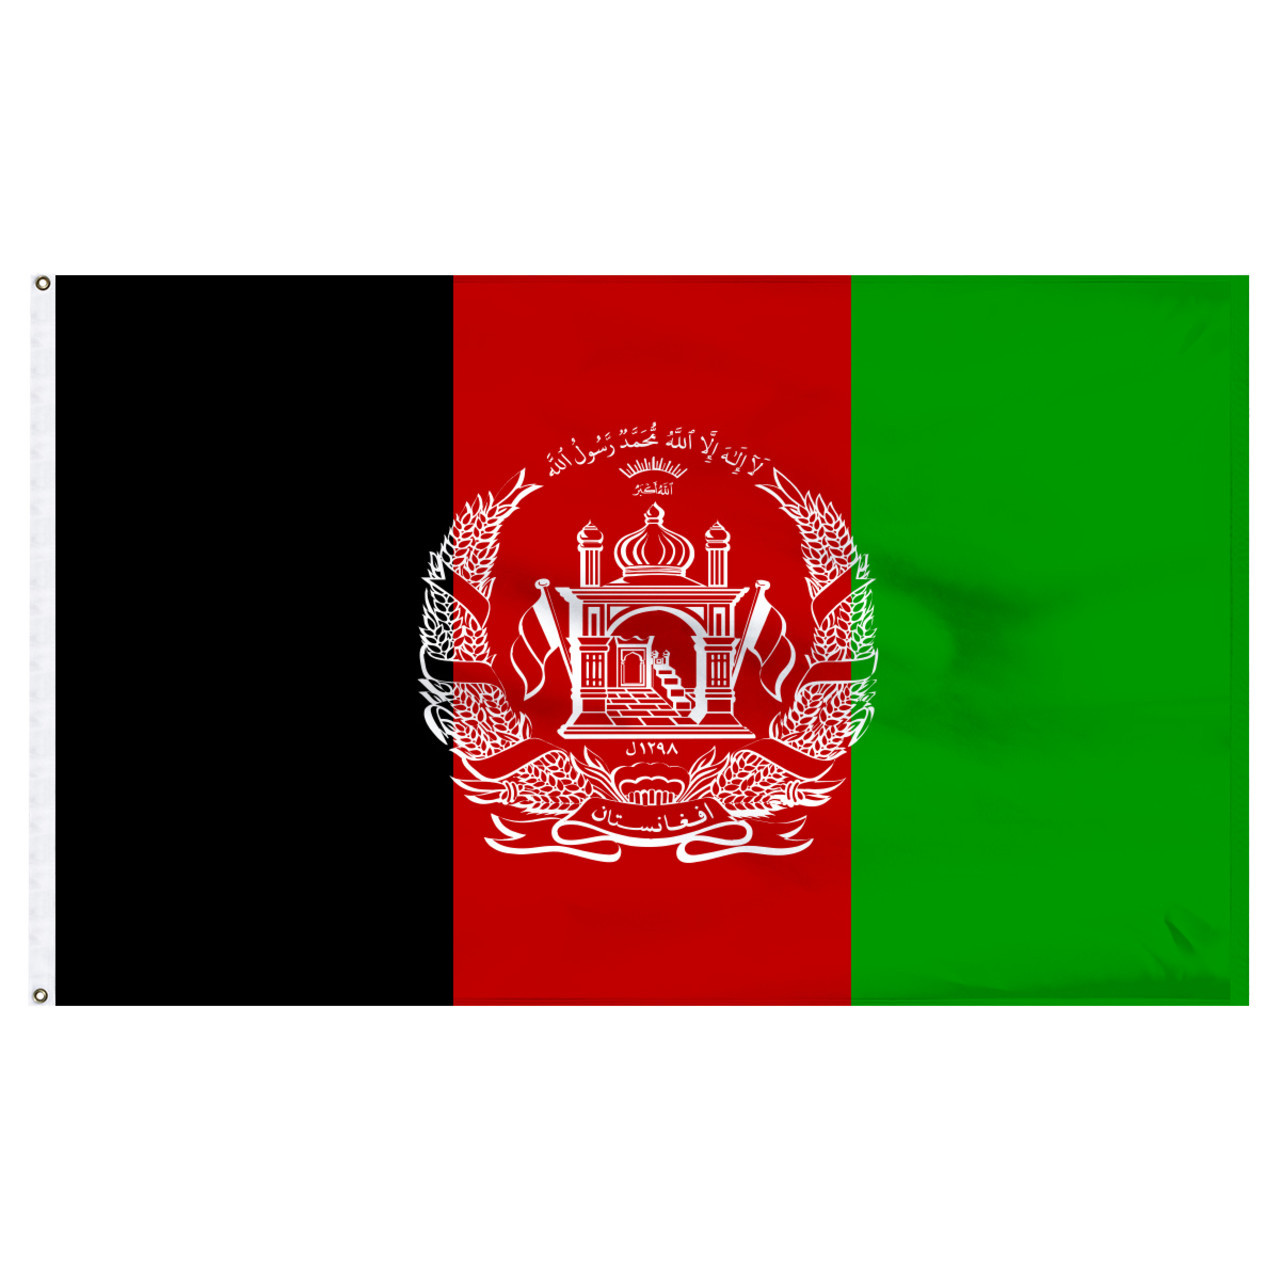 Afghanistan 4ft x 6ft Nylon Flag